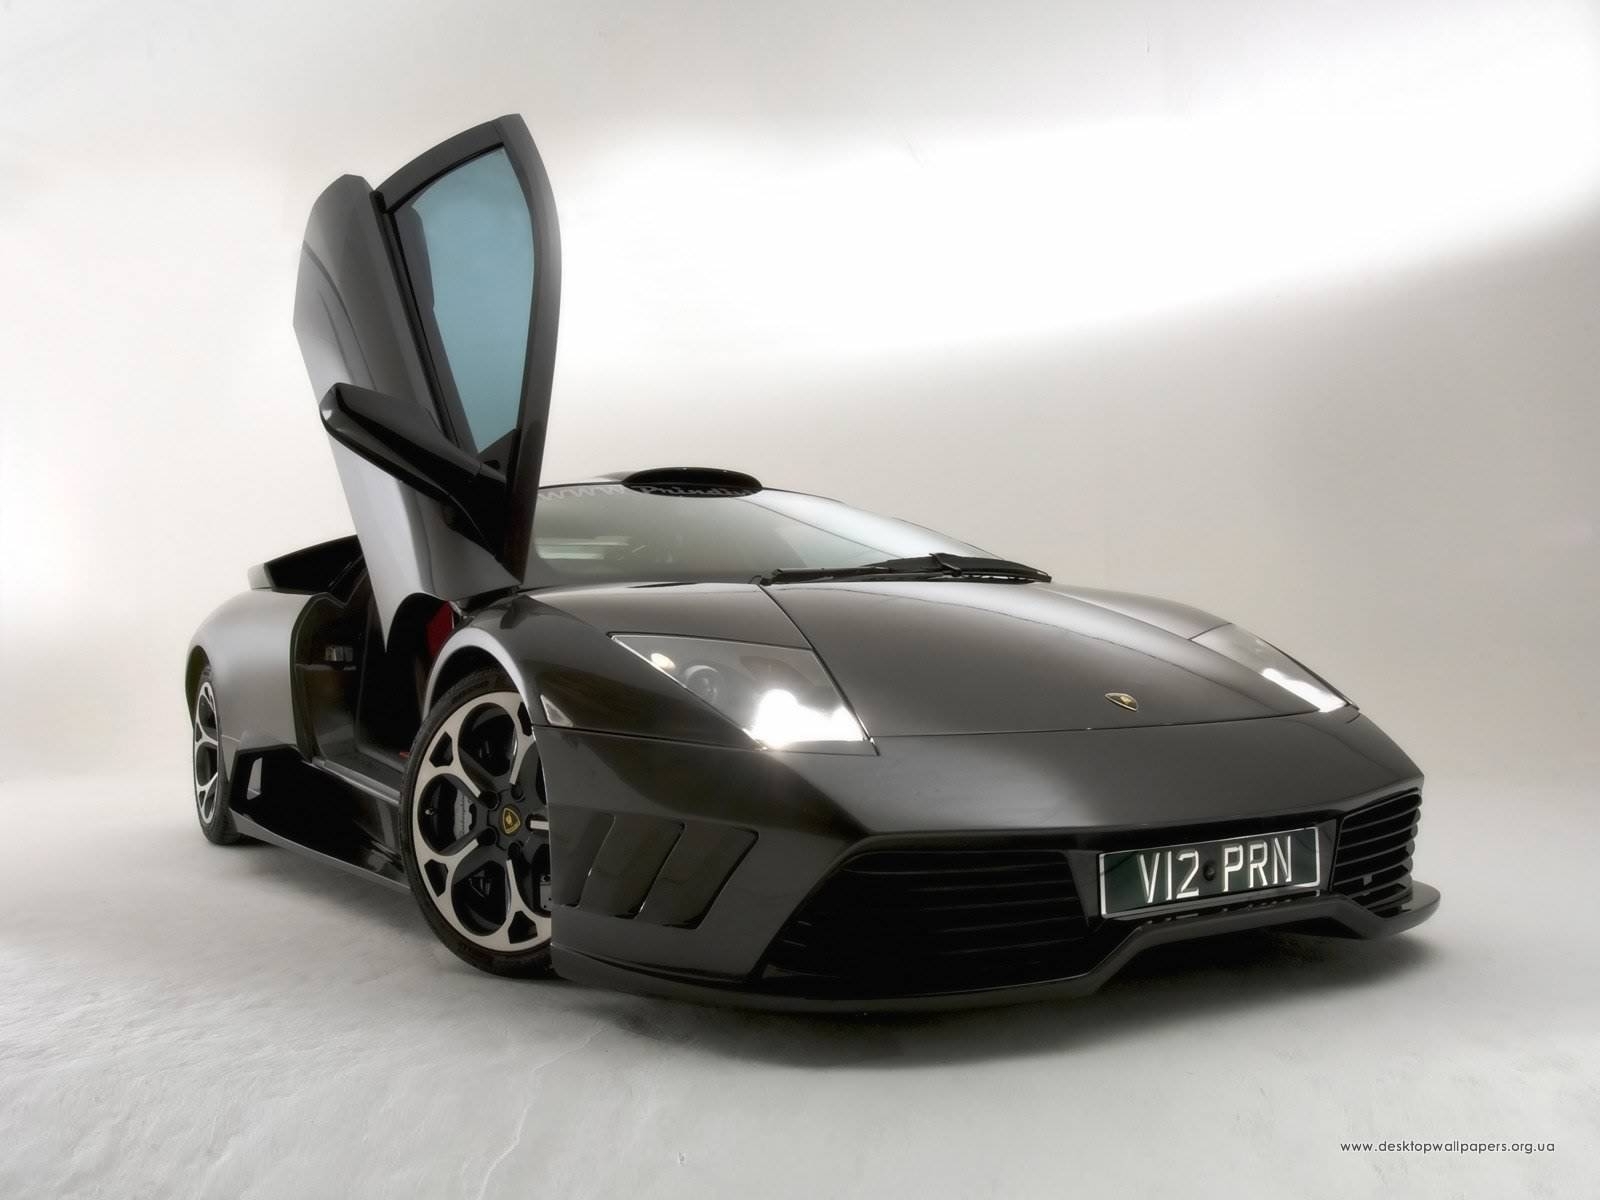 Download mobile wallpaper Transport, Auto, Lamborghini for free.